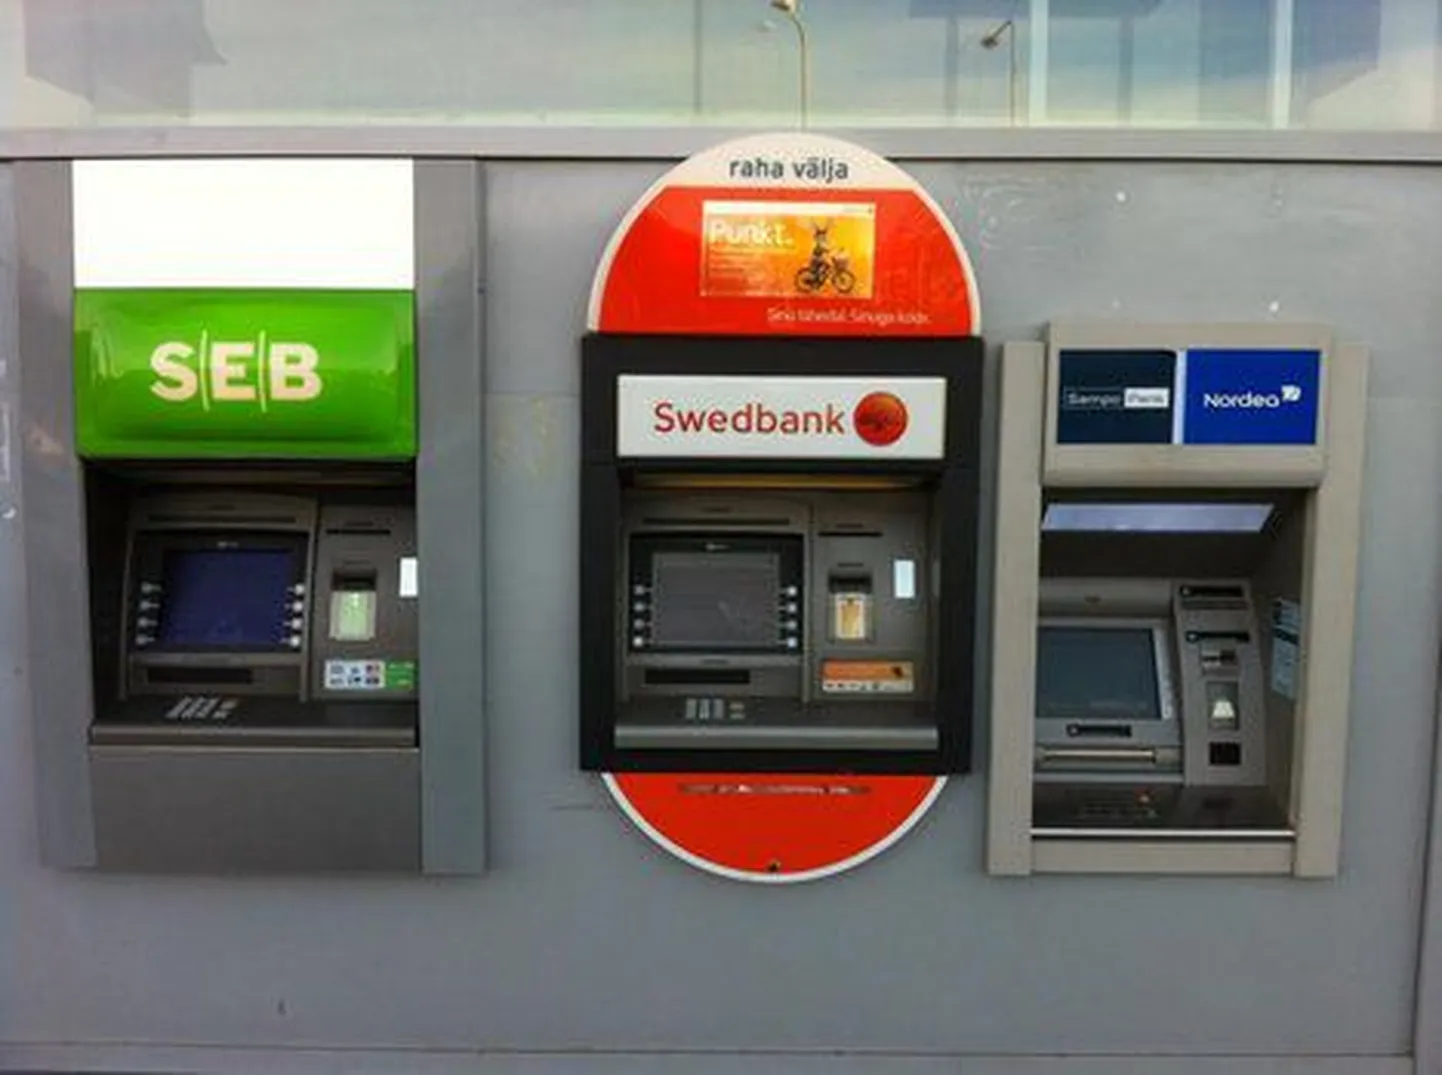 Банкоматы SEB, Swedbank и Nordea/Sampo перед входом в магазин Comarket в Виймси.